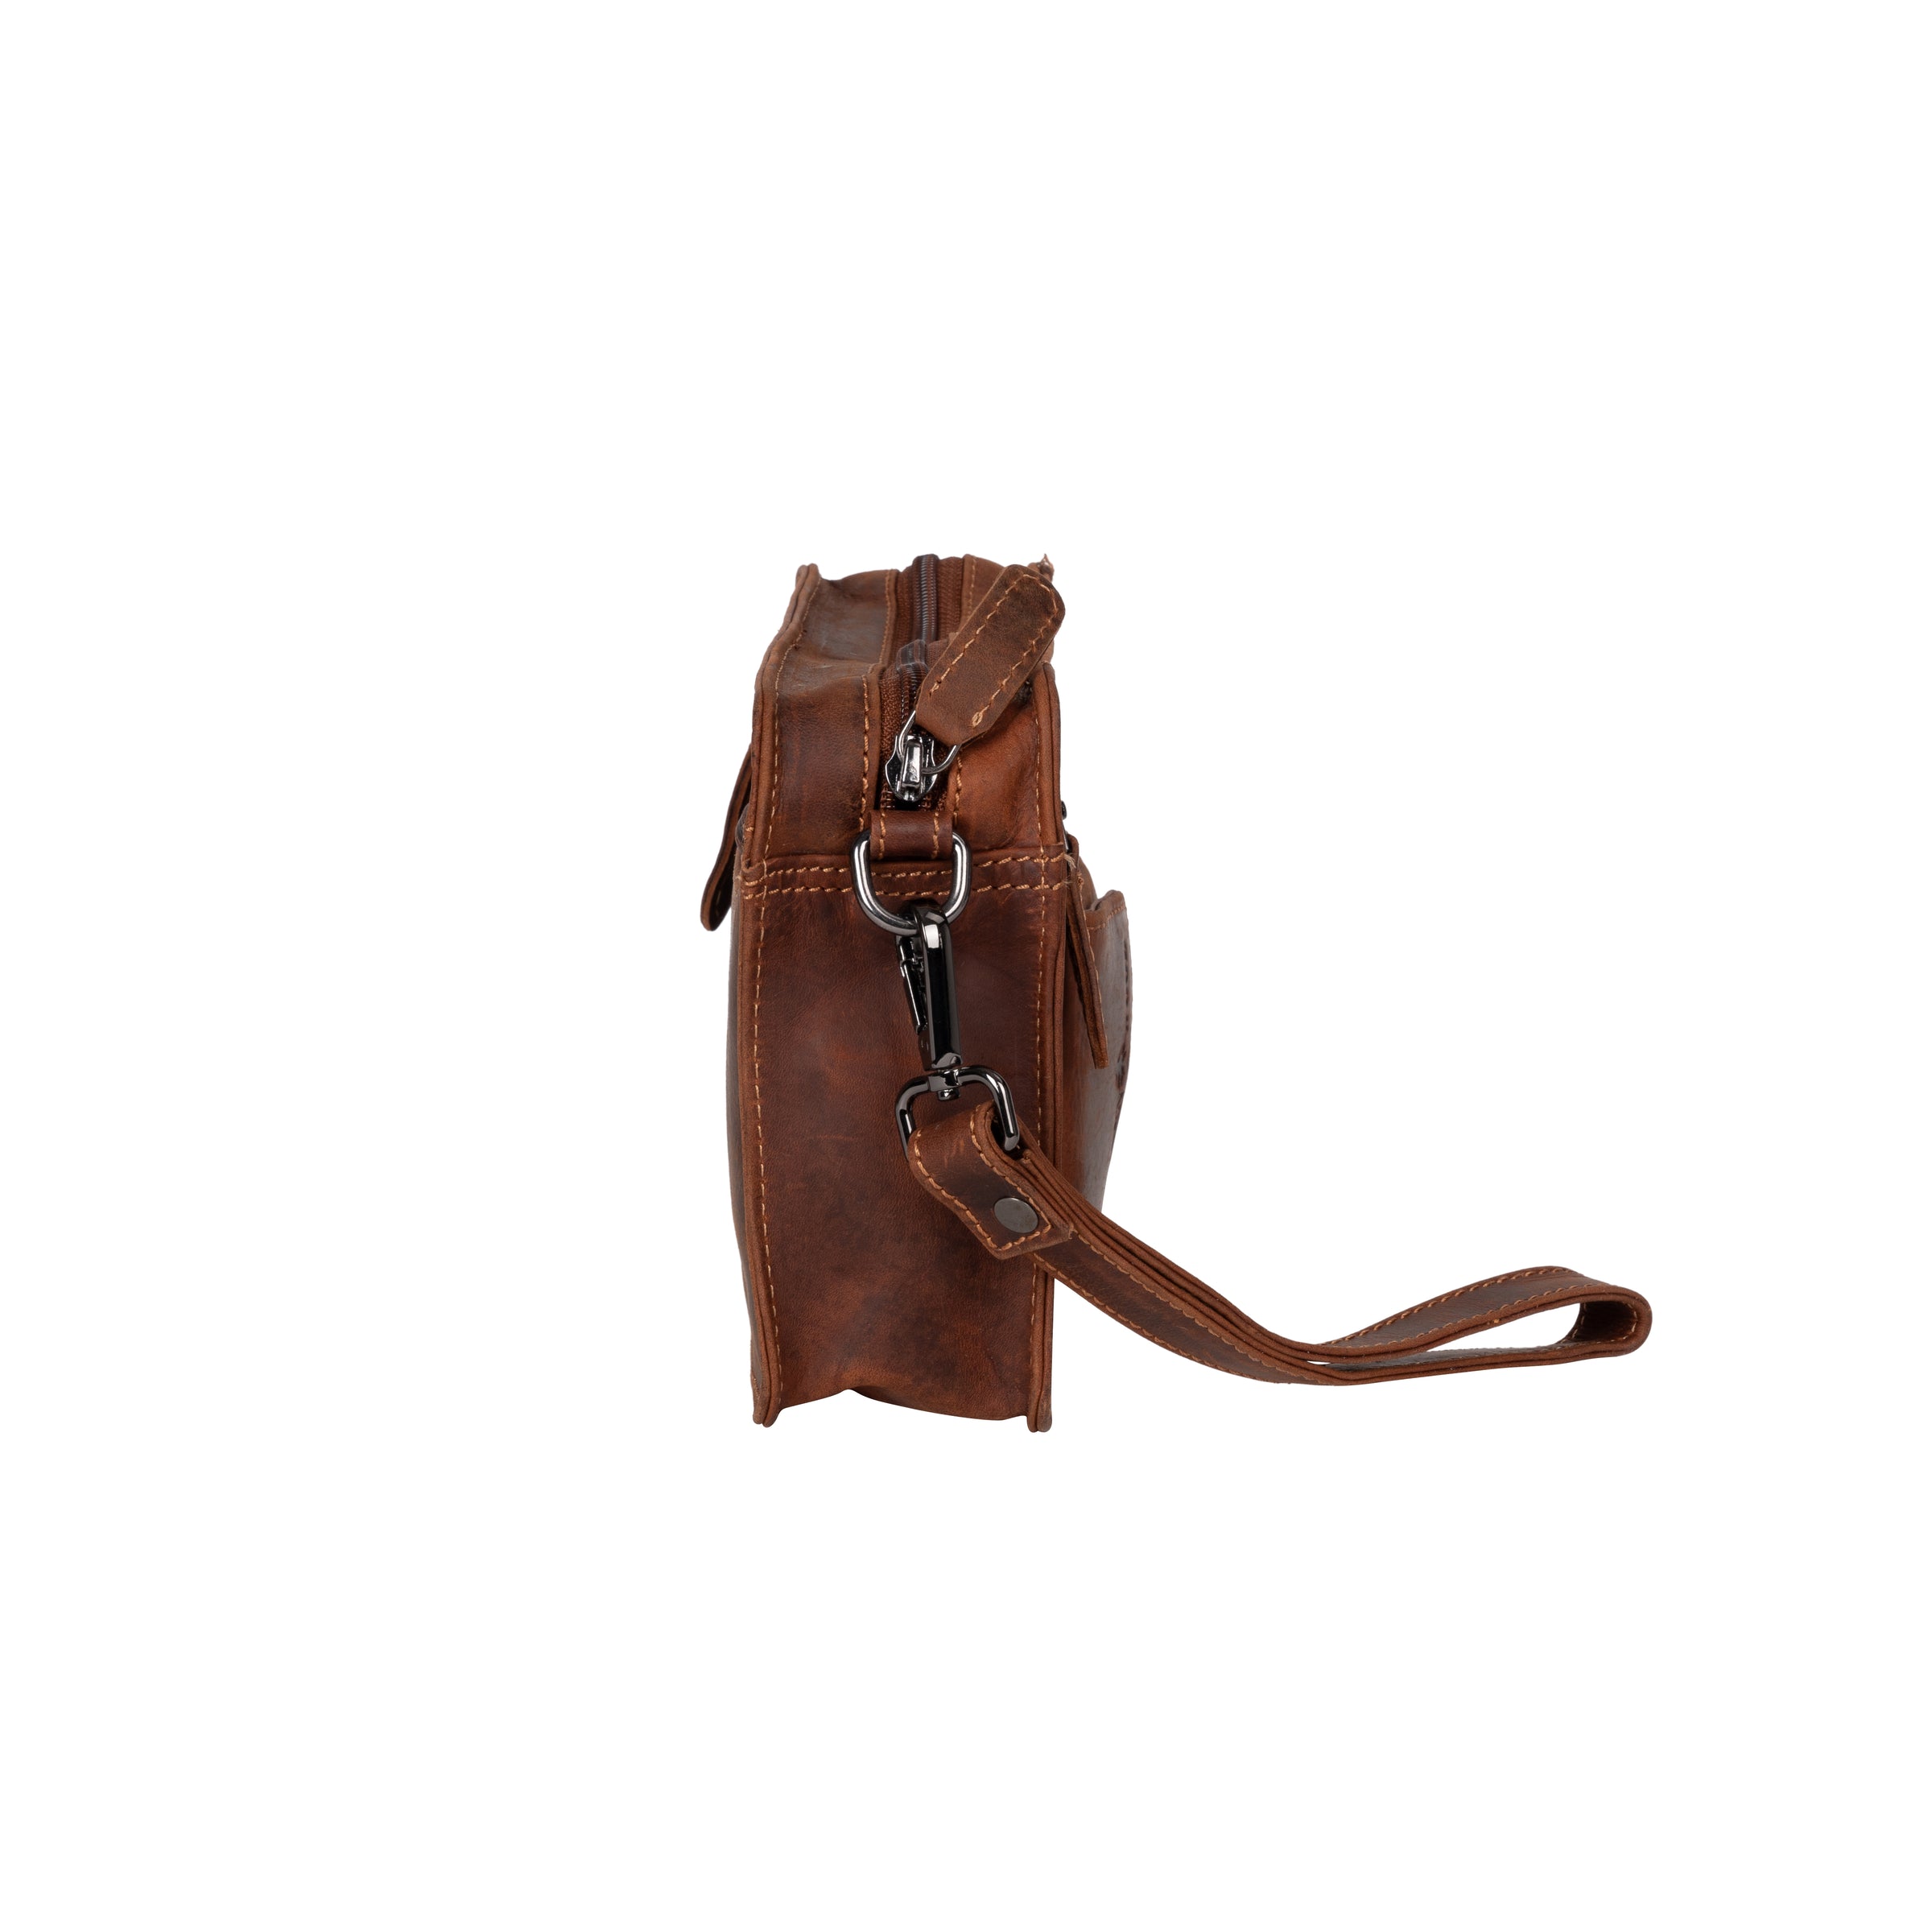 Leather Shoulder Bag - Sandel